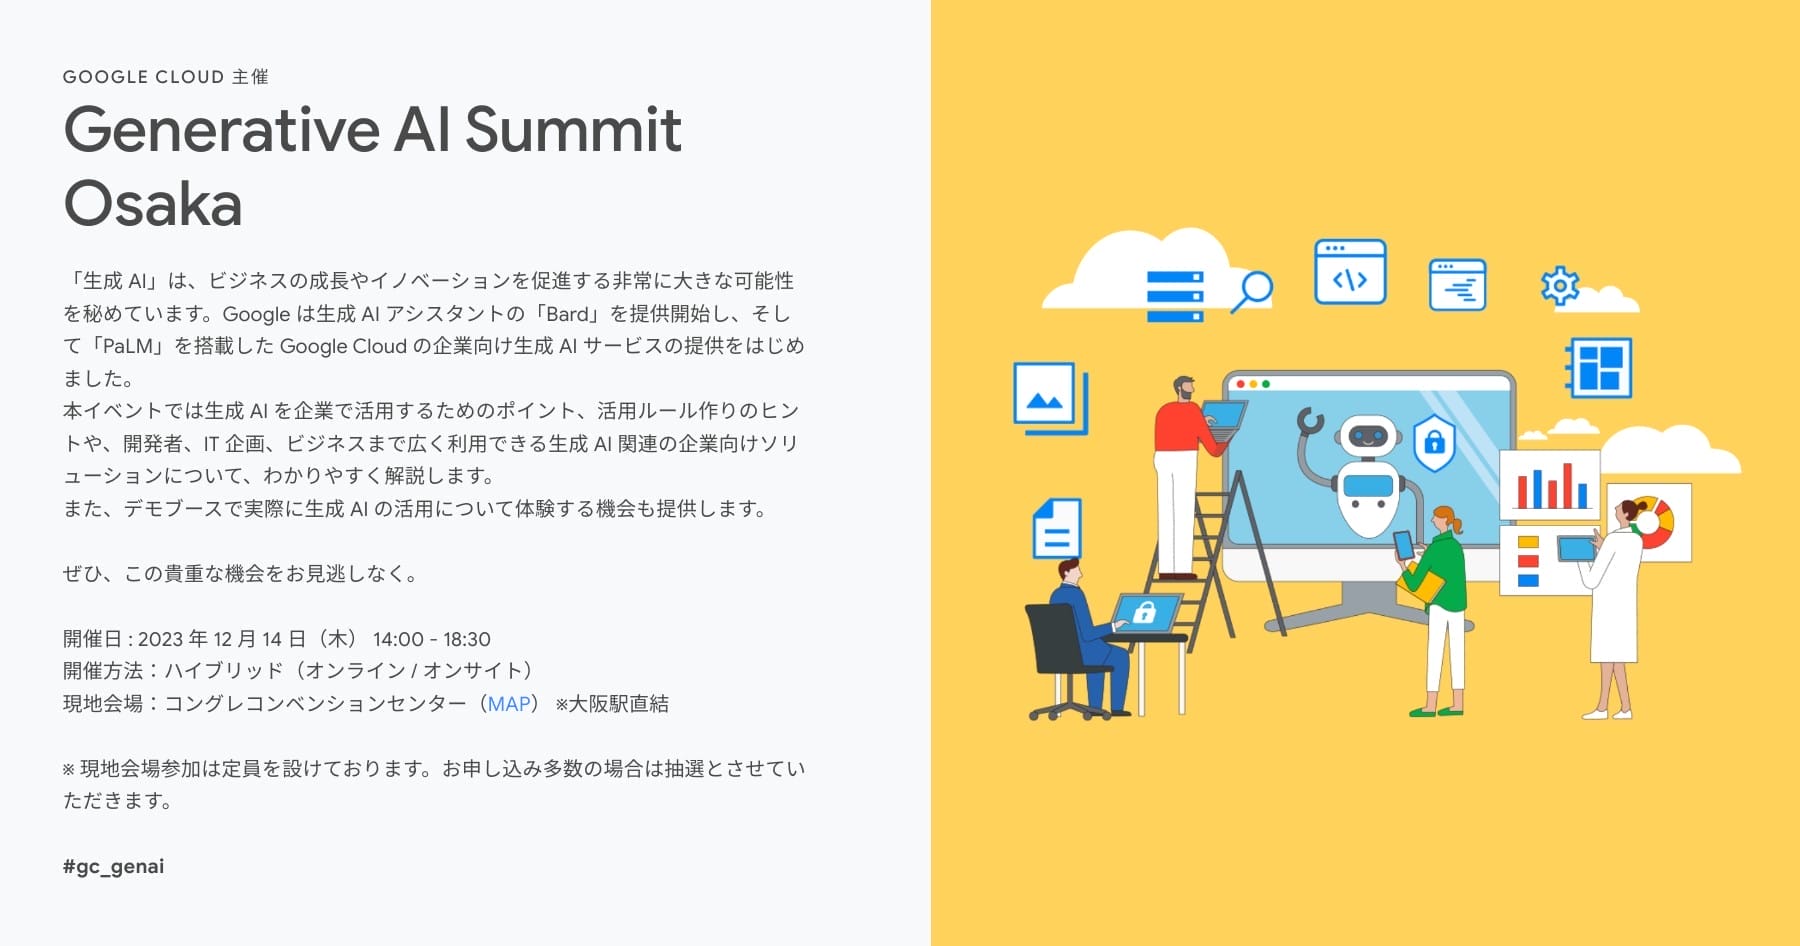 [Google Cloud] Generative AI Summit Osaka